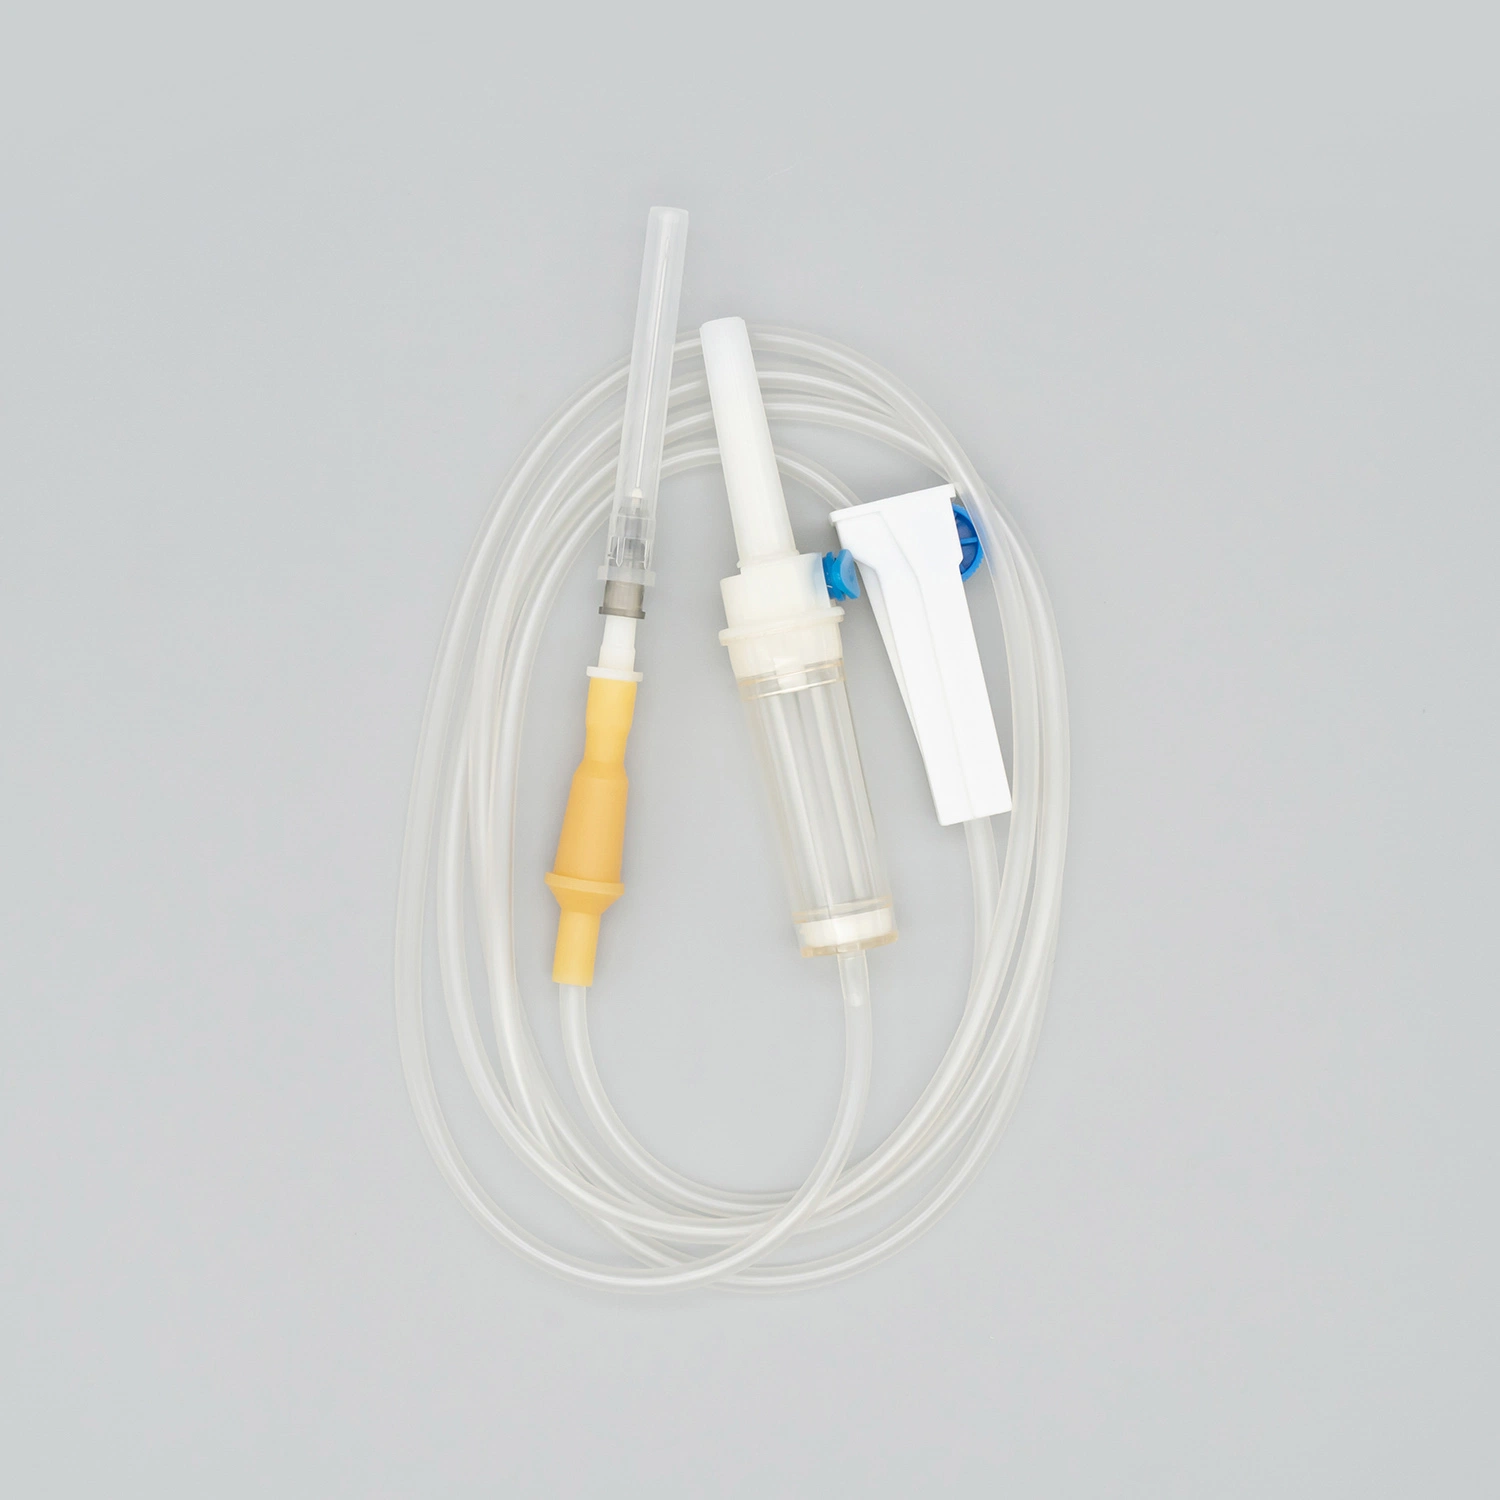 Жидкостный фильтр, люэровский наконечник, OEM, одноразовые пакеты для крови, набор для внутривенного вливания